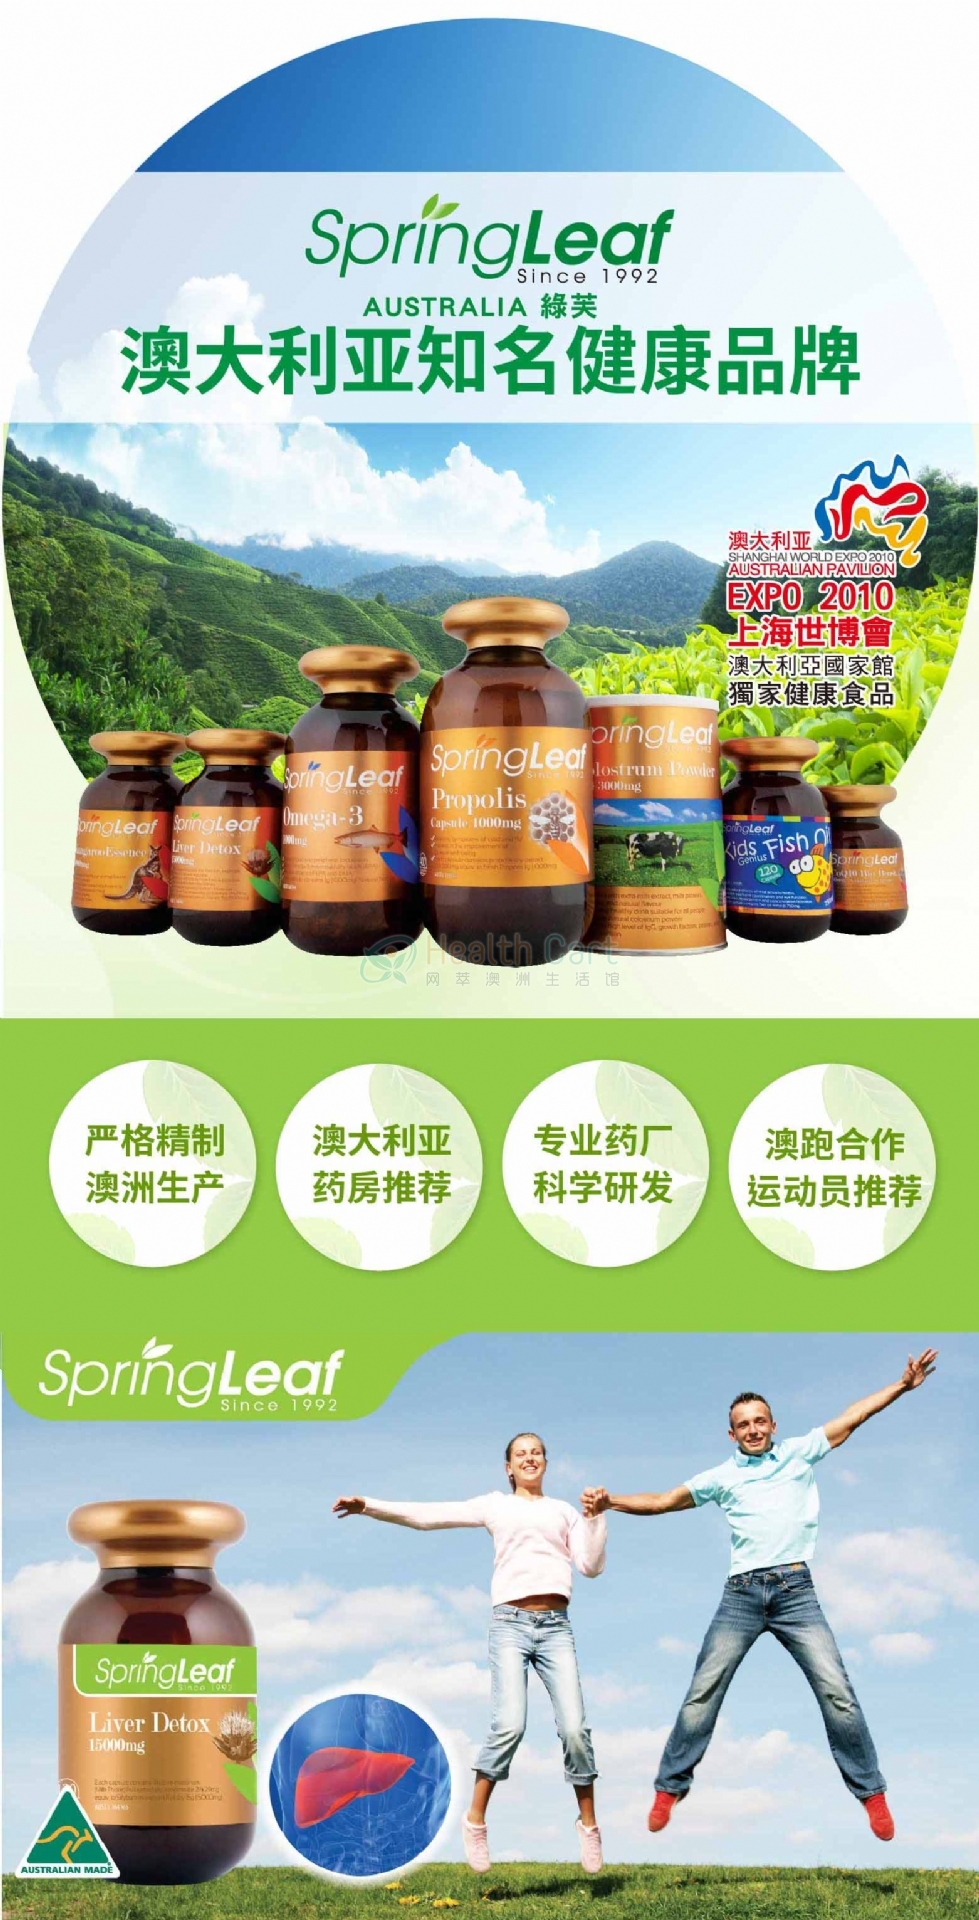 SpringLeaf Liver Detox 15000mg 120caps - @springleaf liver detox 15000mg 120caps - 10 - Health Cart